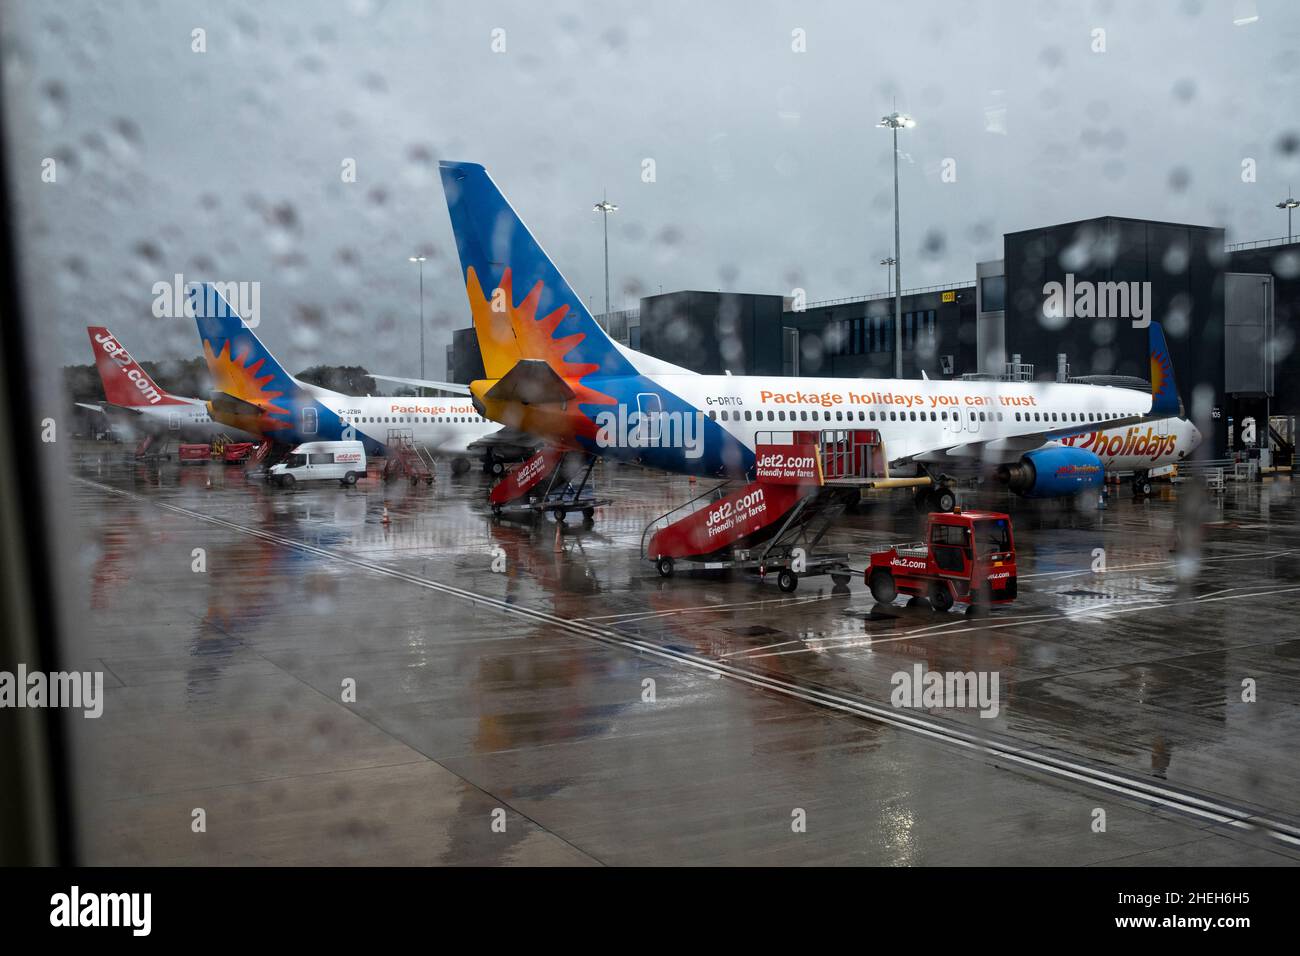 Avion de vacances Jet 2 vu à travers la fenêtre d'un avion sous la pluie sur le sol à l'aéroport de Manchester, Angleterre, Royaume-Uni Banque D'Images